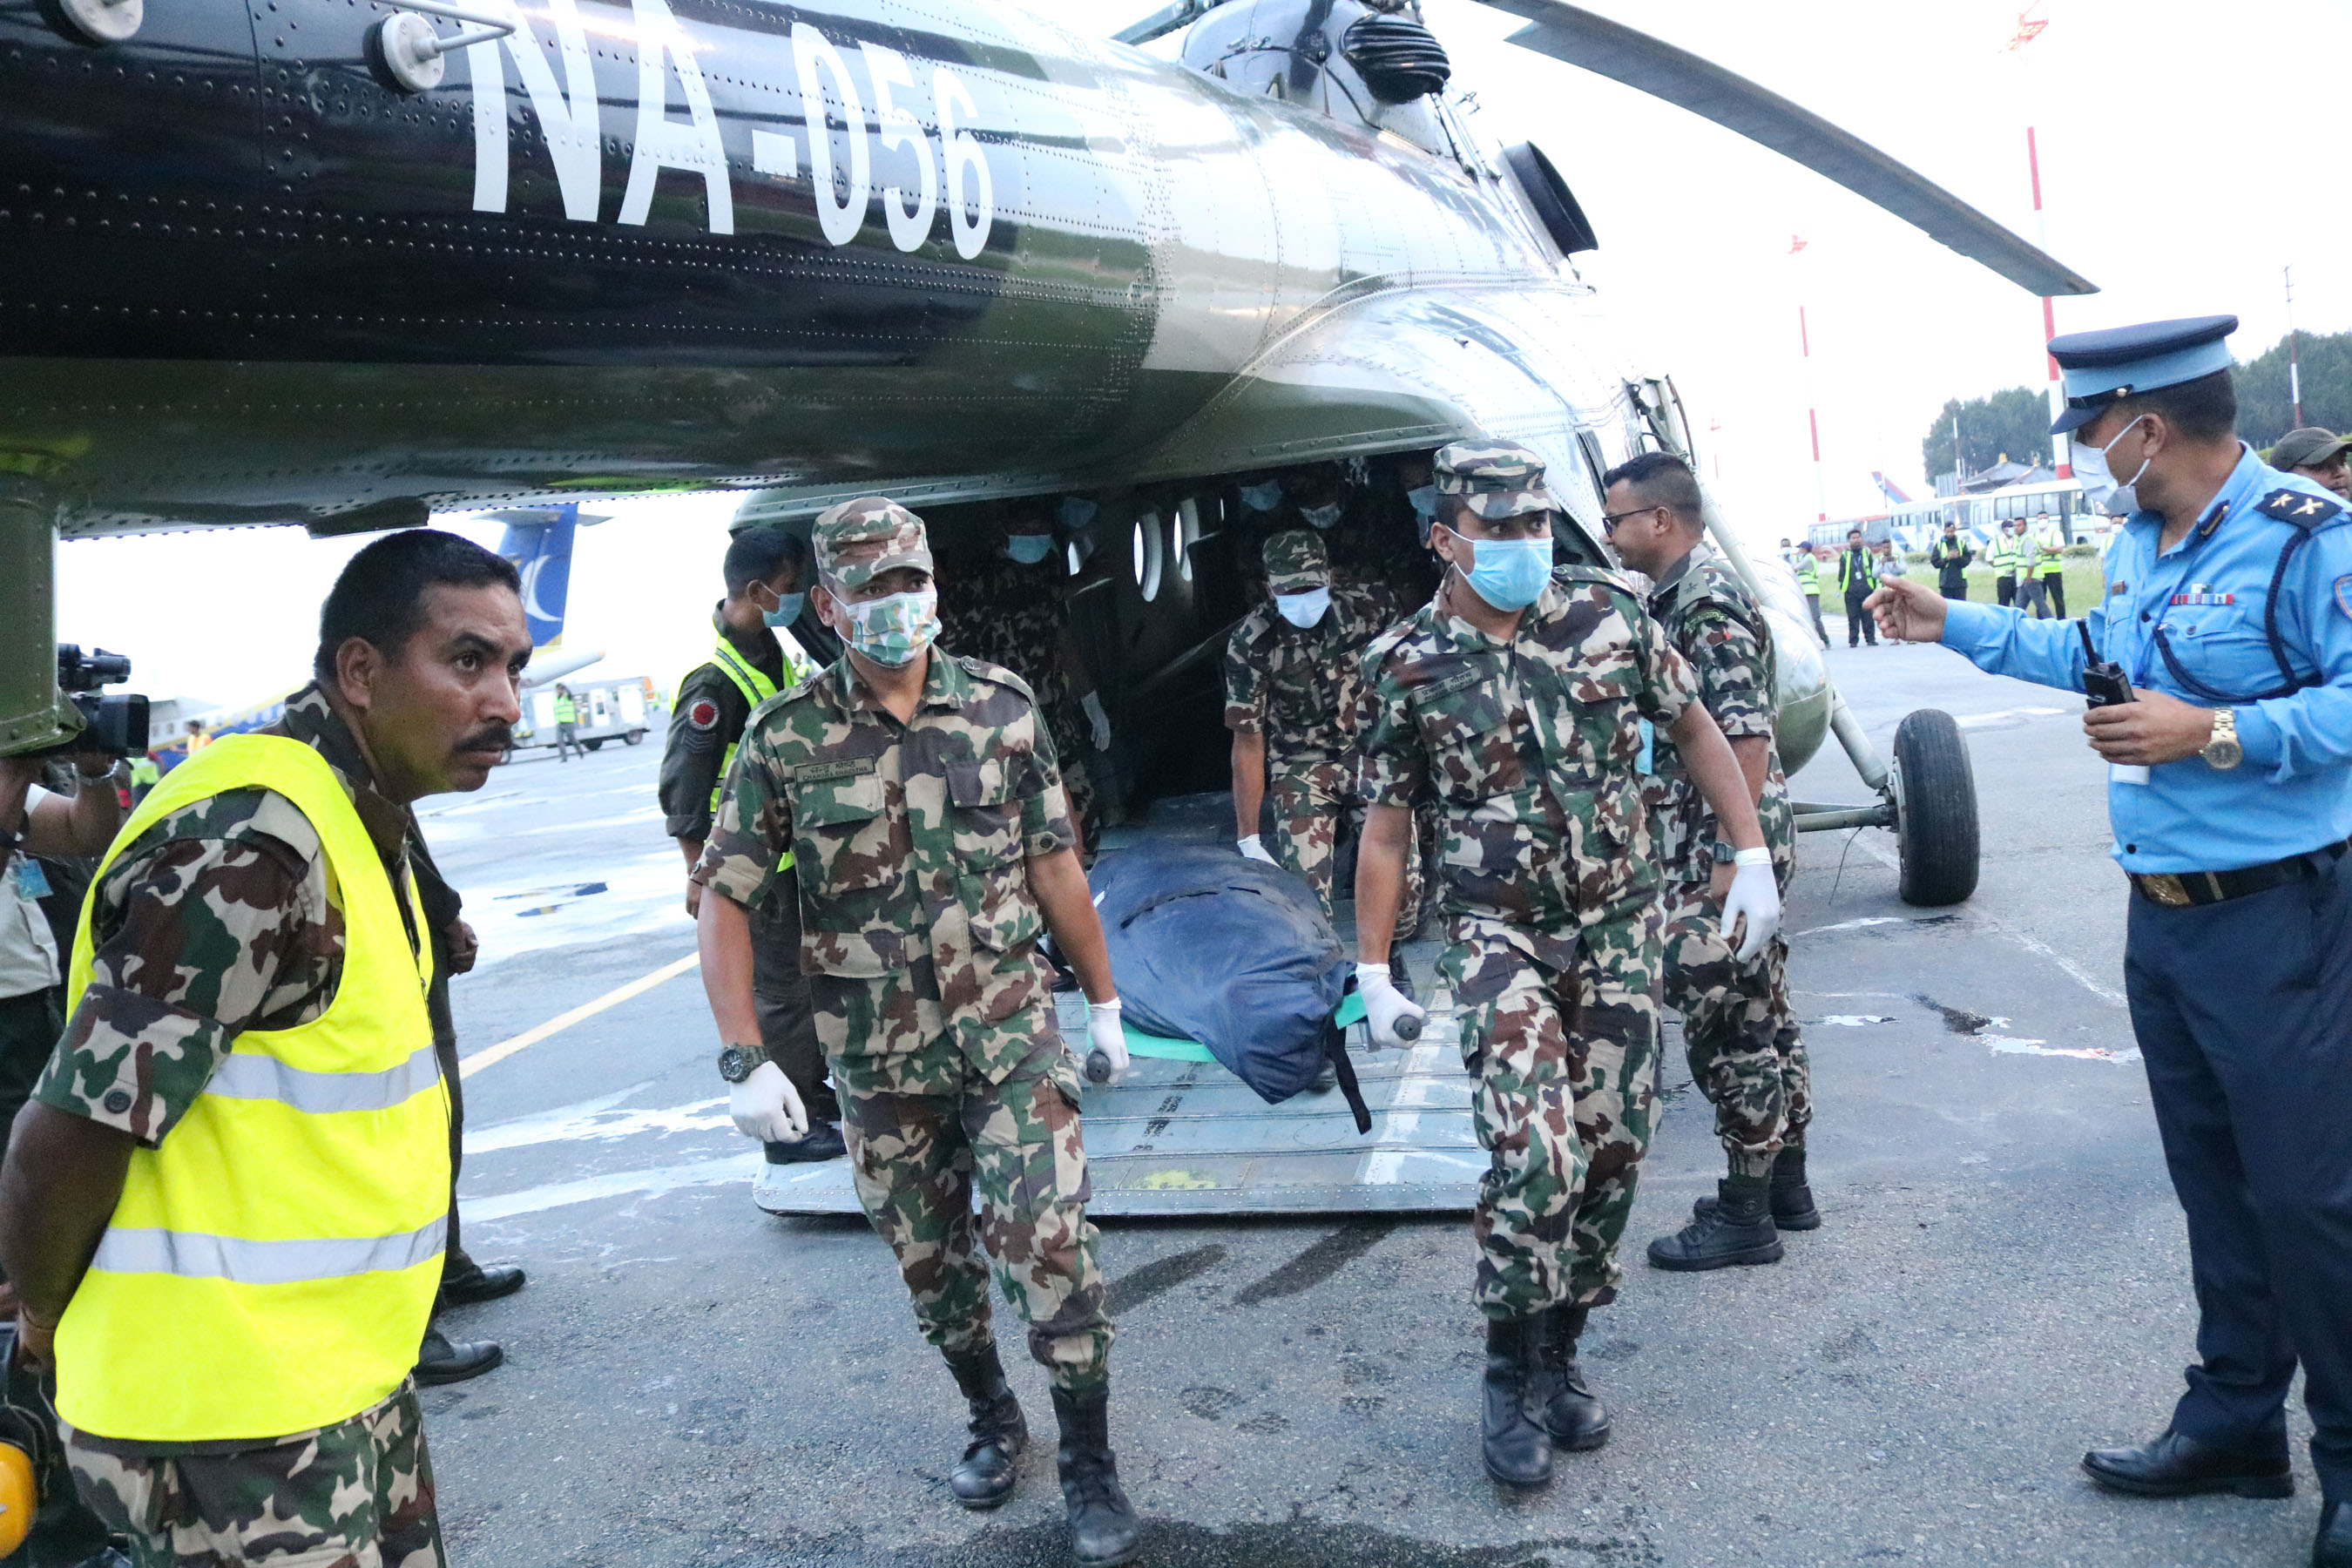 काठमाडौं ल्याइयो तारा एयरको दुर्घटनाग्रस्त जहाजका यात्रुको शव